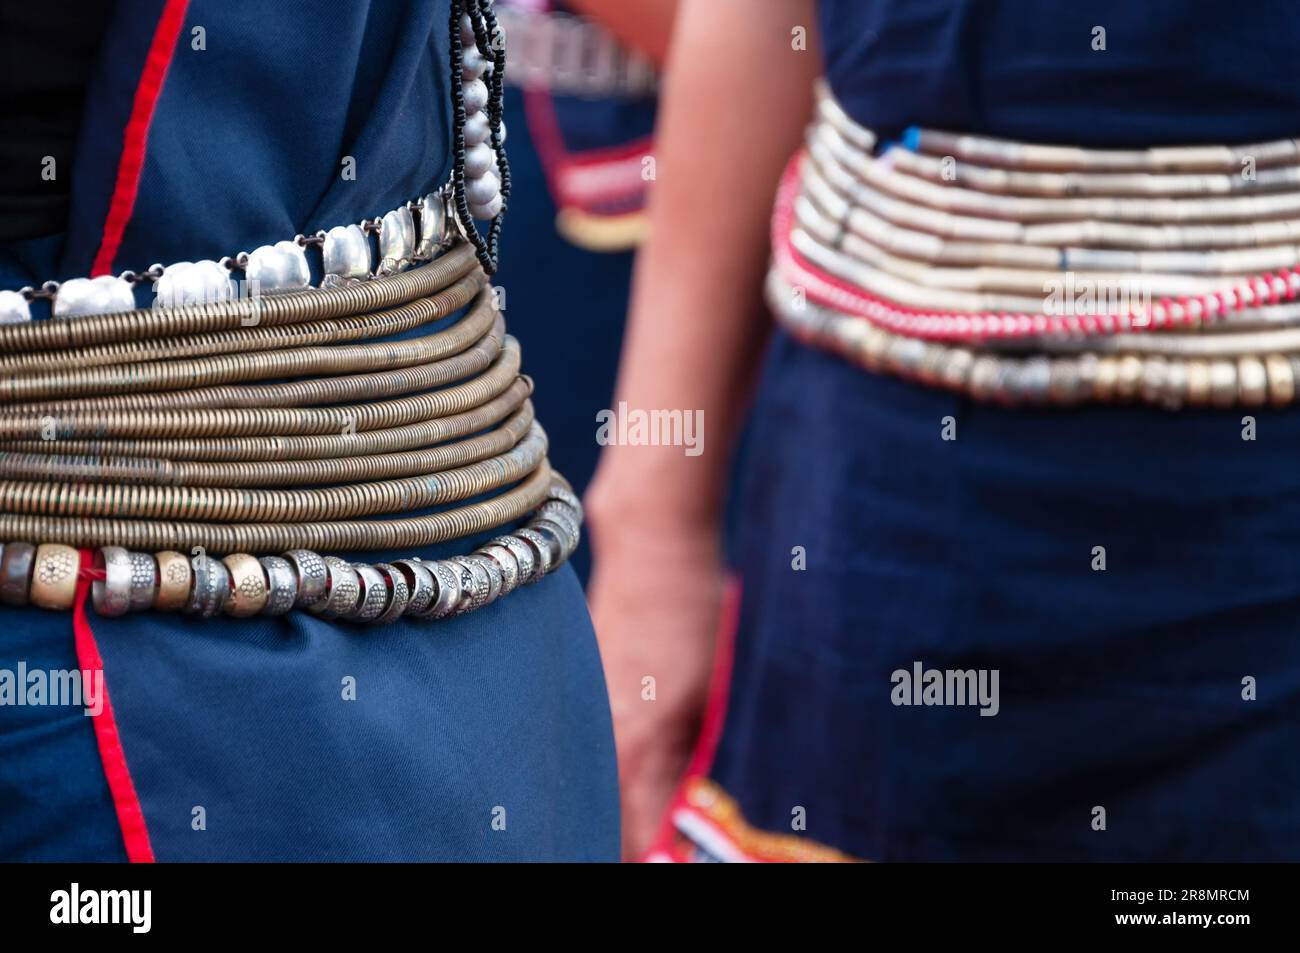 Kadazan Dusun traditional hip belt known as Tangkong Stock Photo